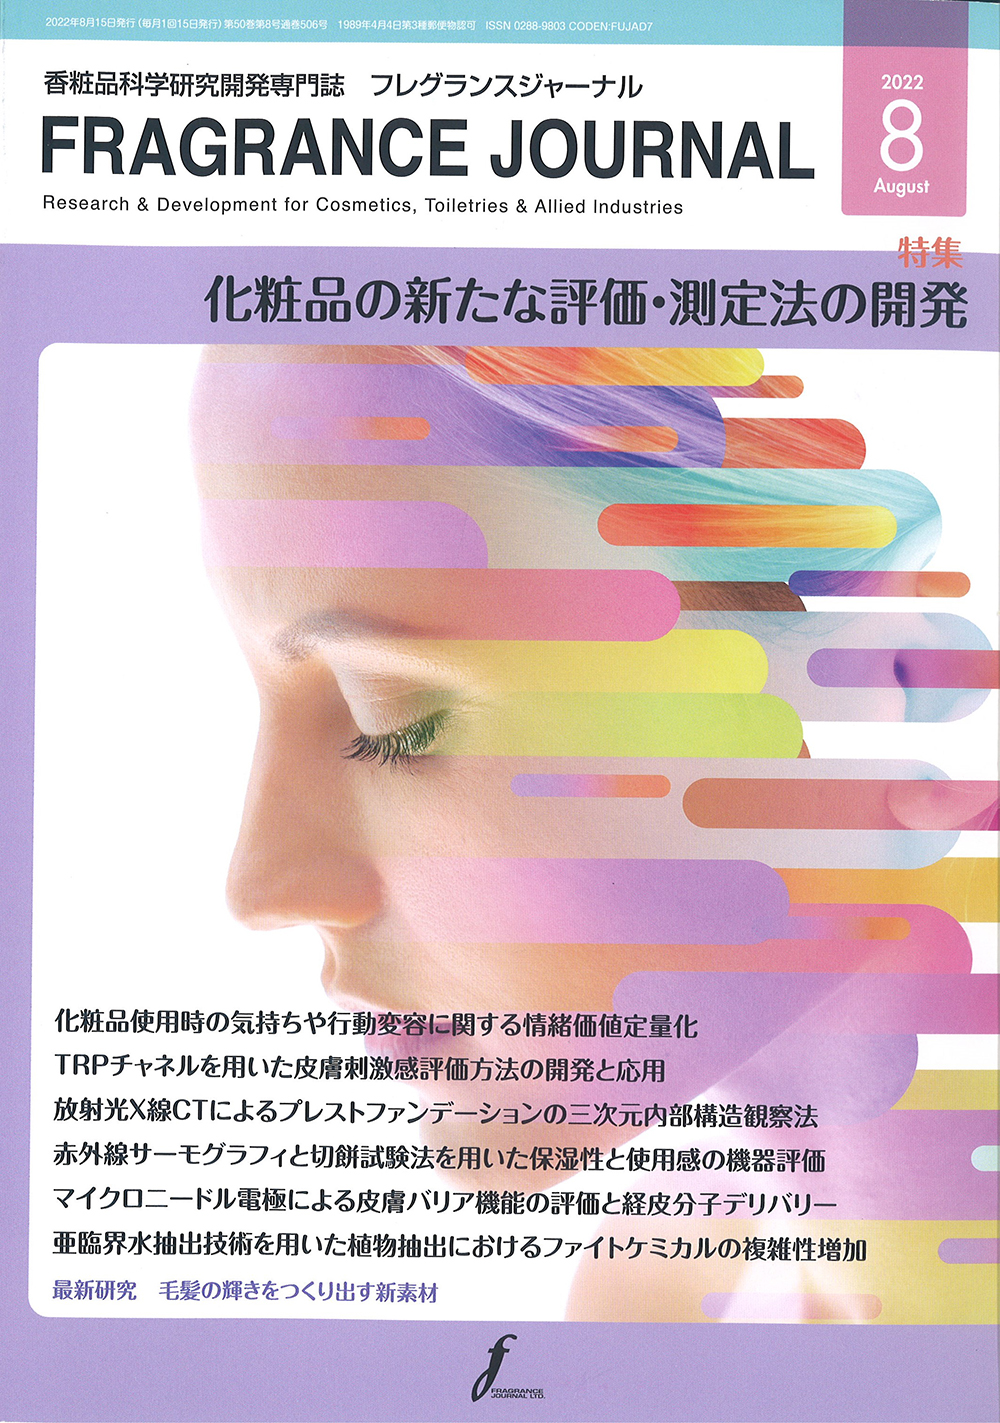 香粧品科学研究開発専門誌「FRAGRANCE JOURNAL」(2022年8月号)